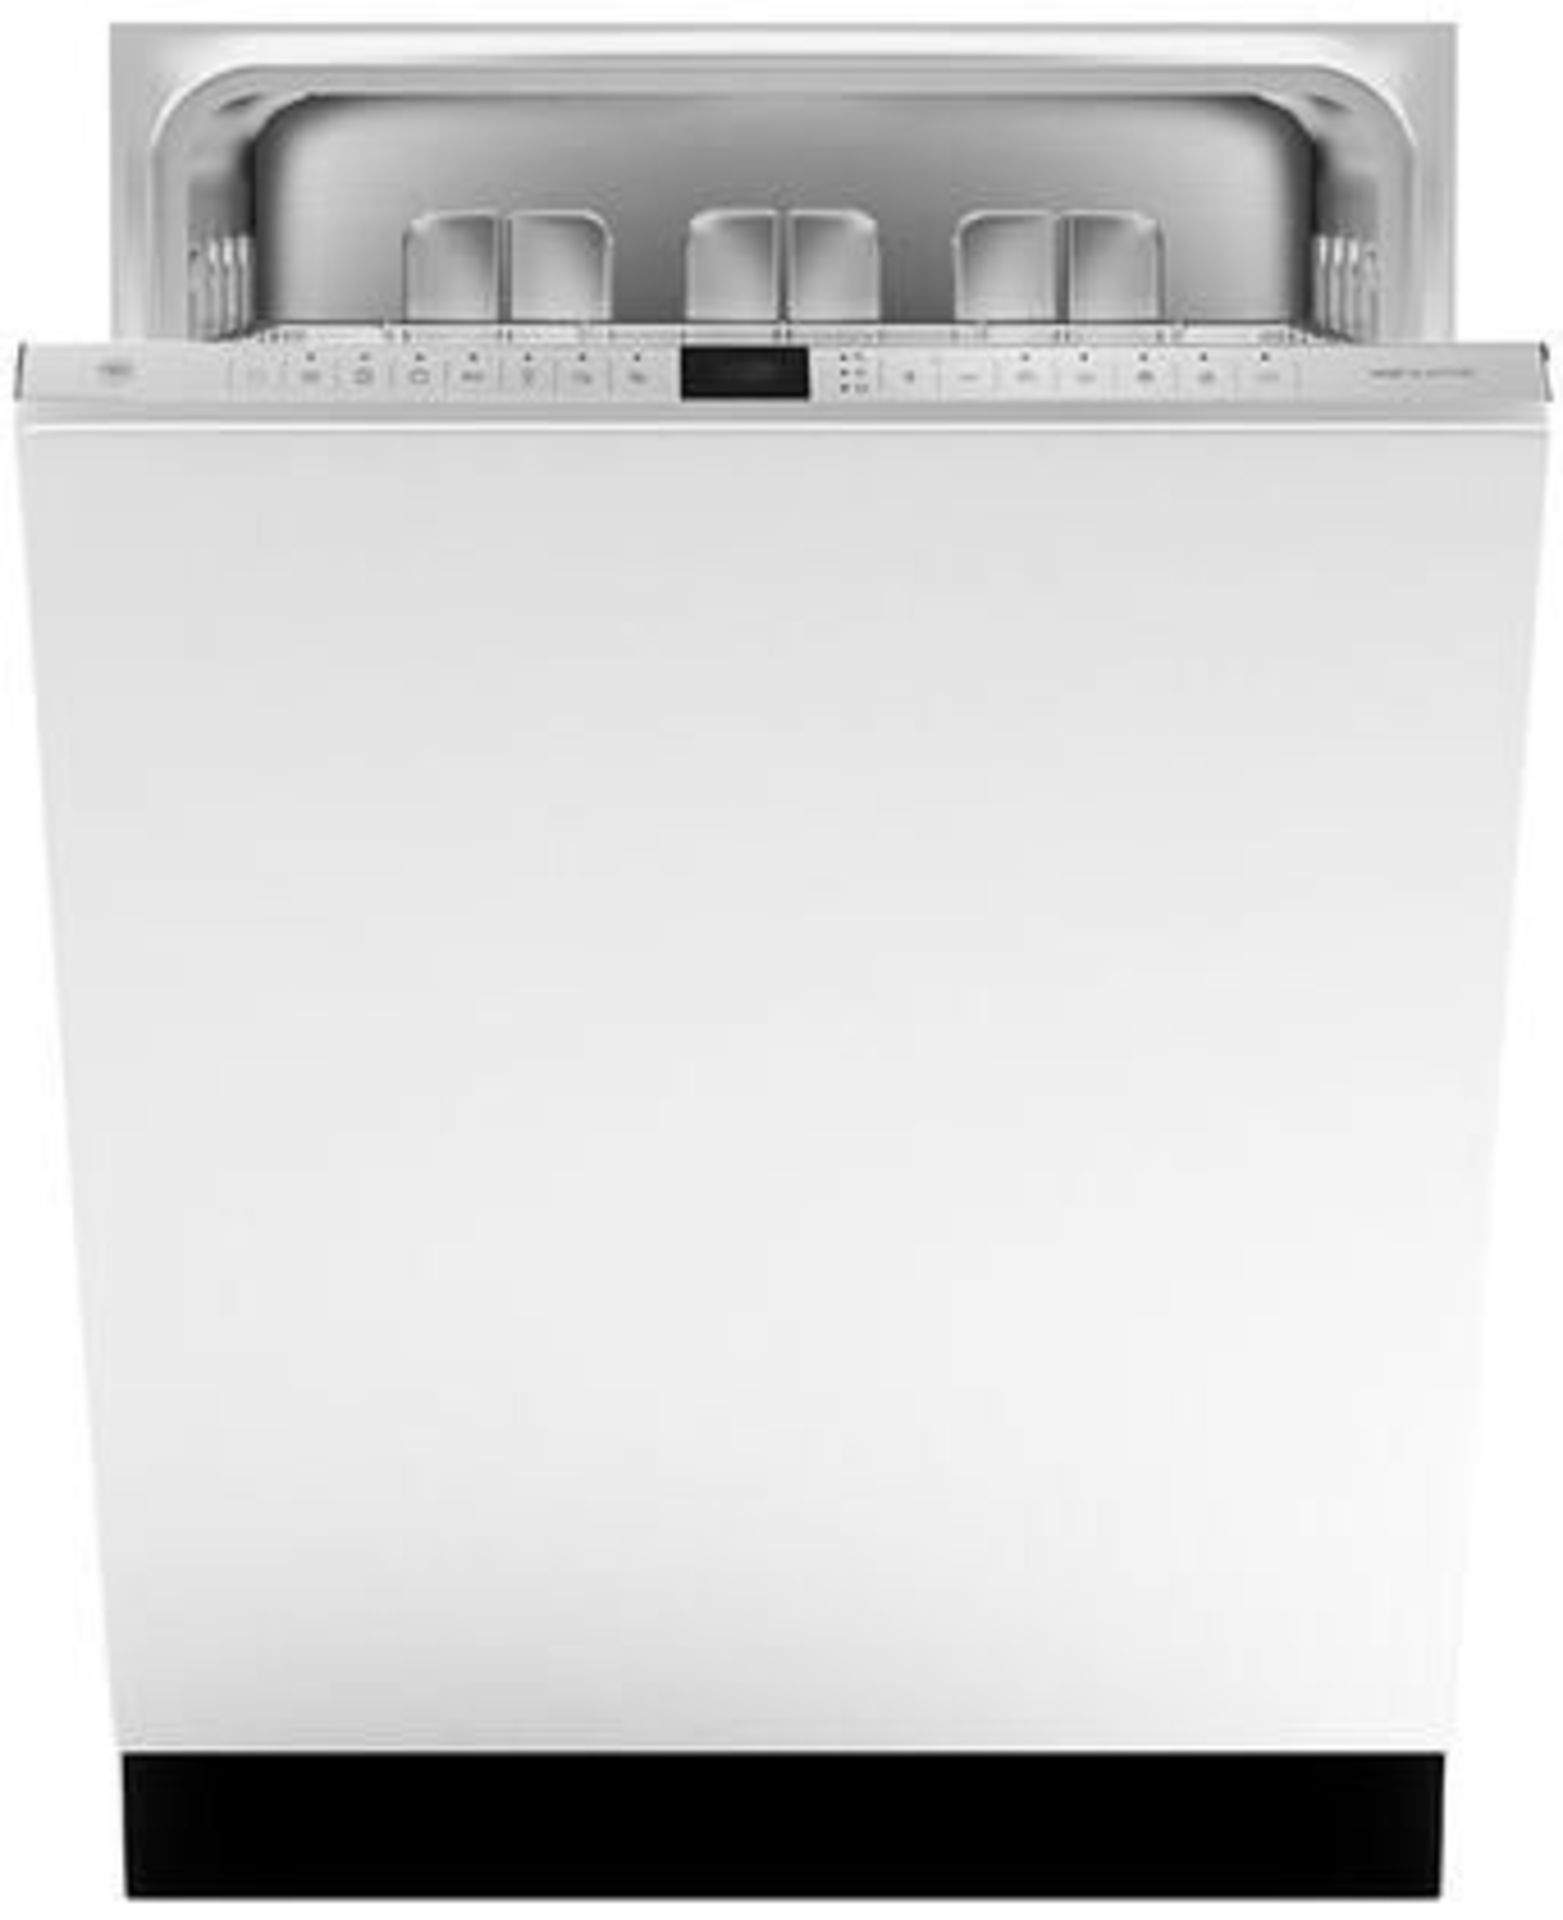 Bertazzoni mod. DW24PR, 24'' Built-In Dishwasher Standard Tub, ADA Compliant